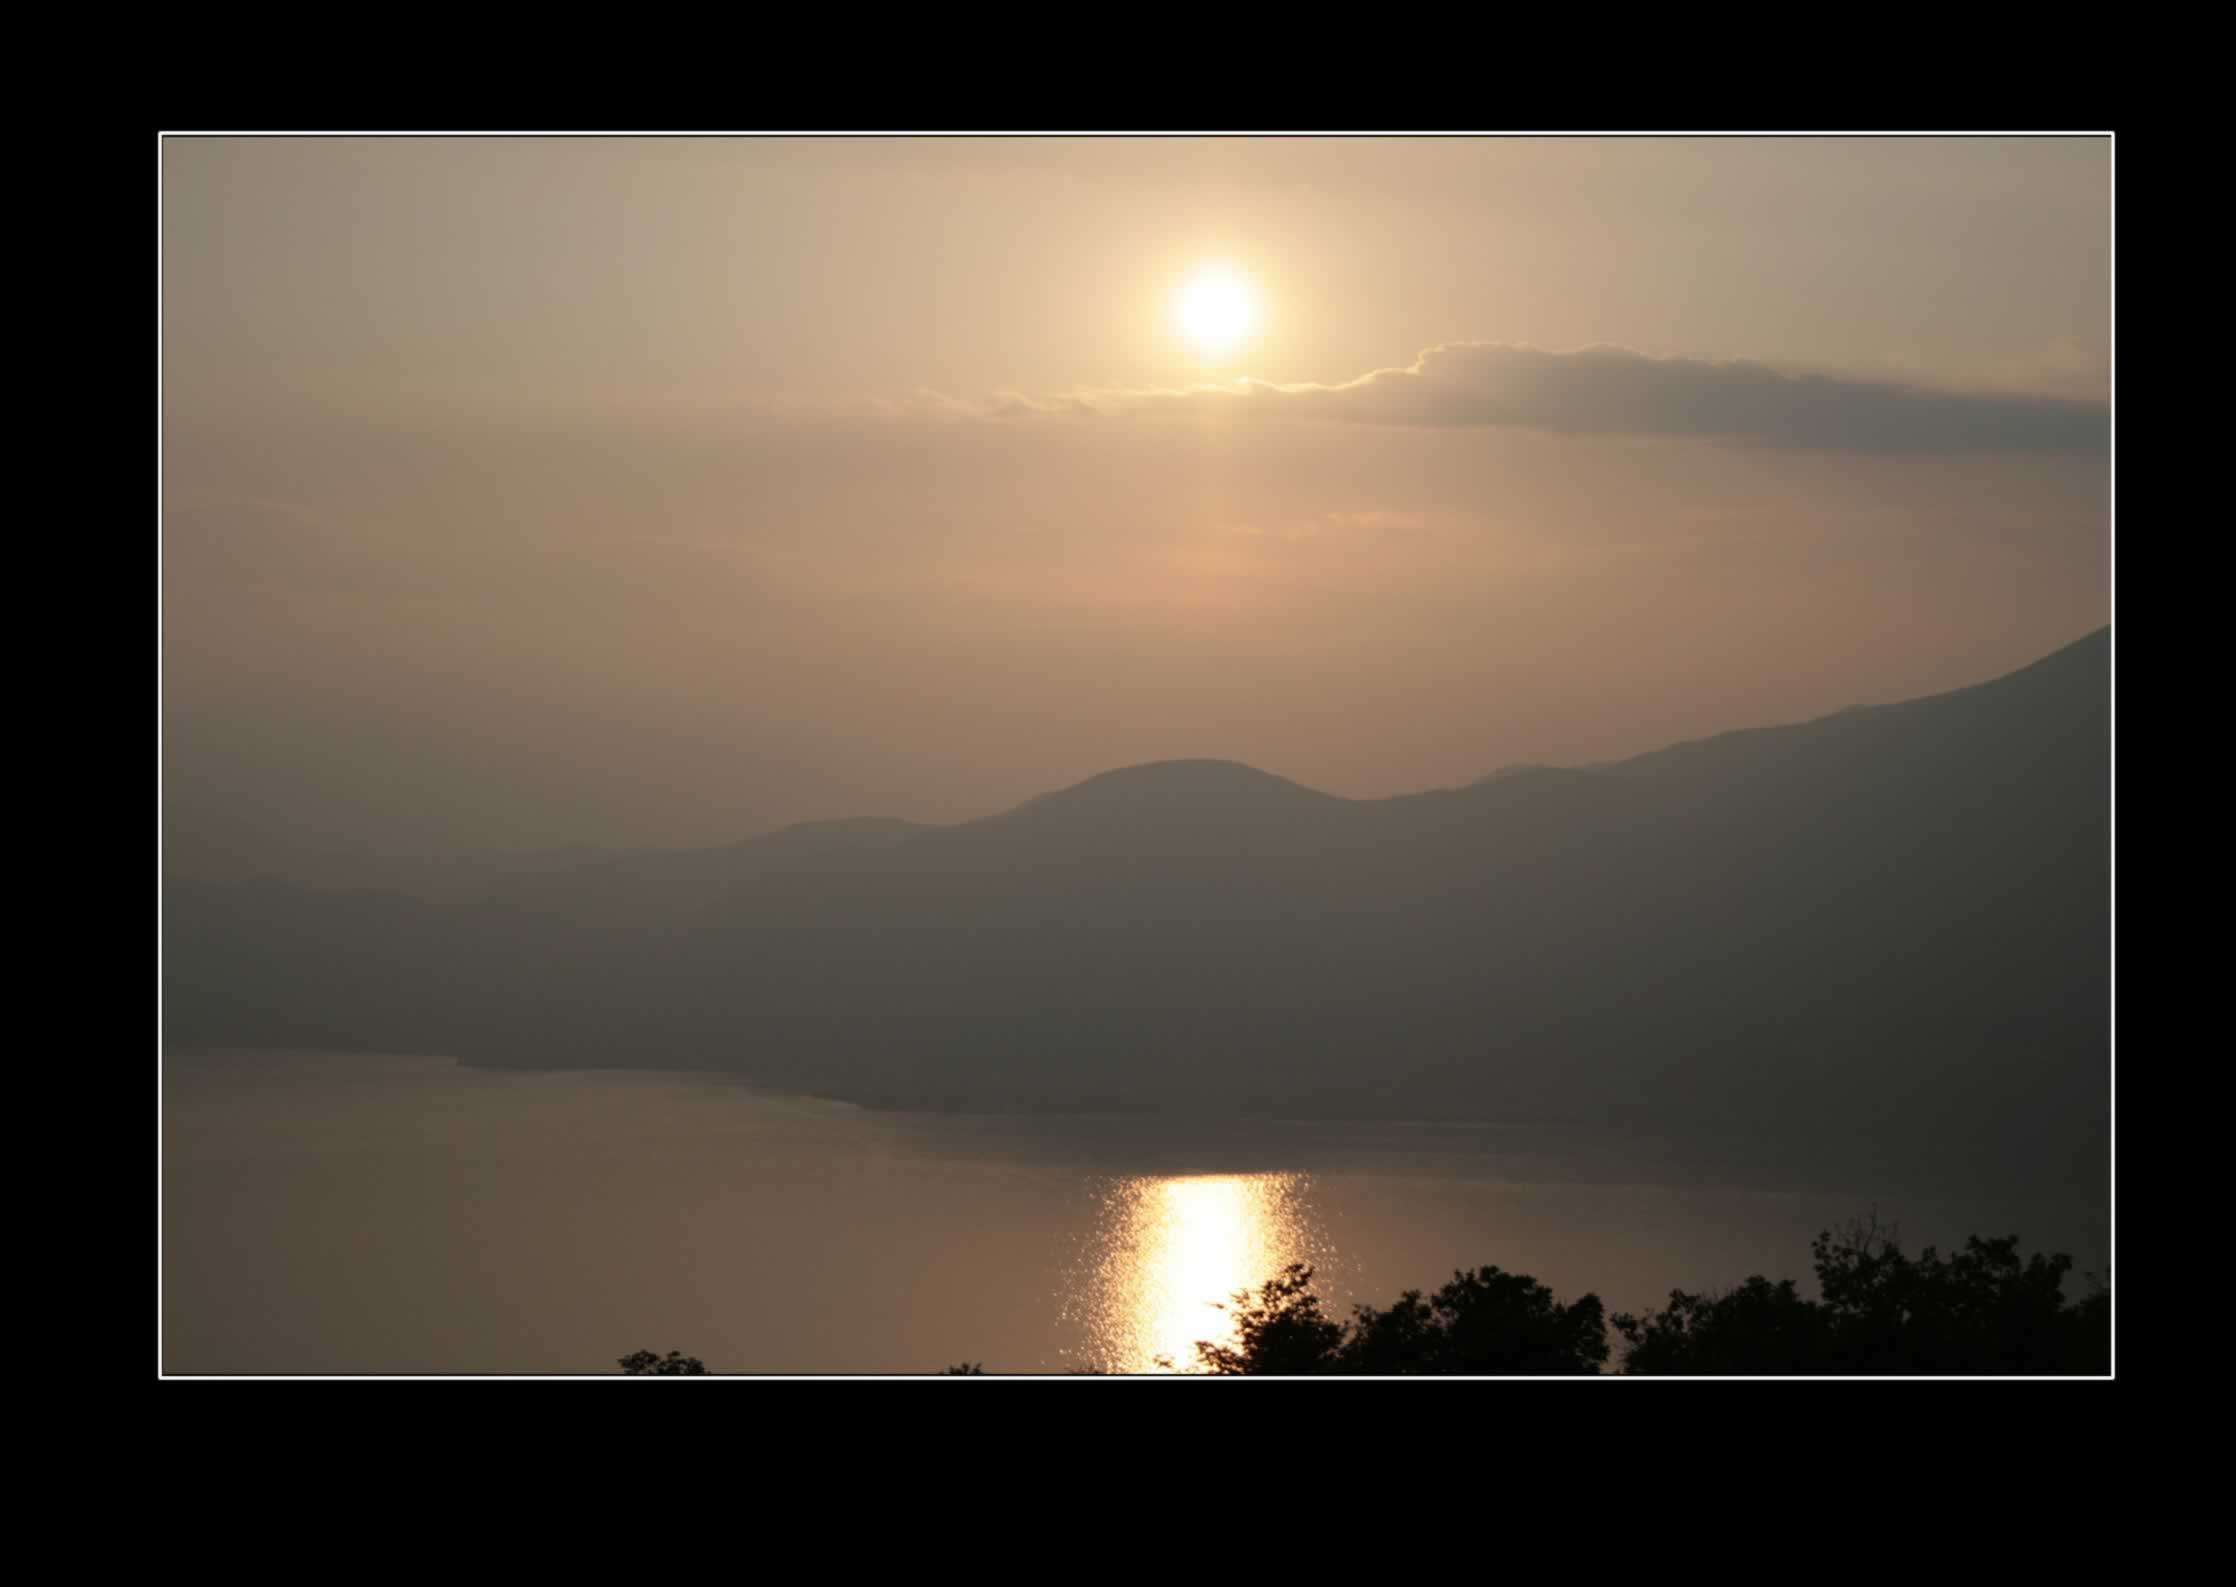 Costermano (Vr)  Lago di Garda Tramondo Tramonto sul Lago di Garda